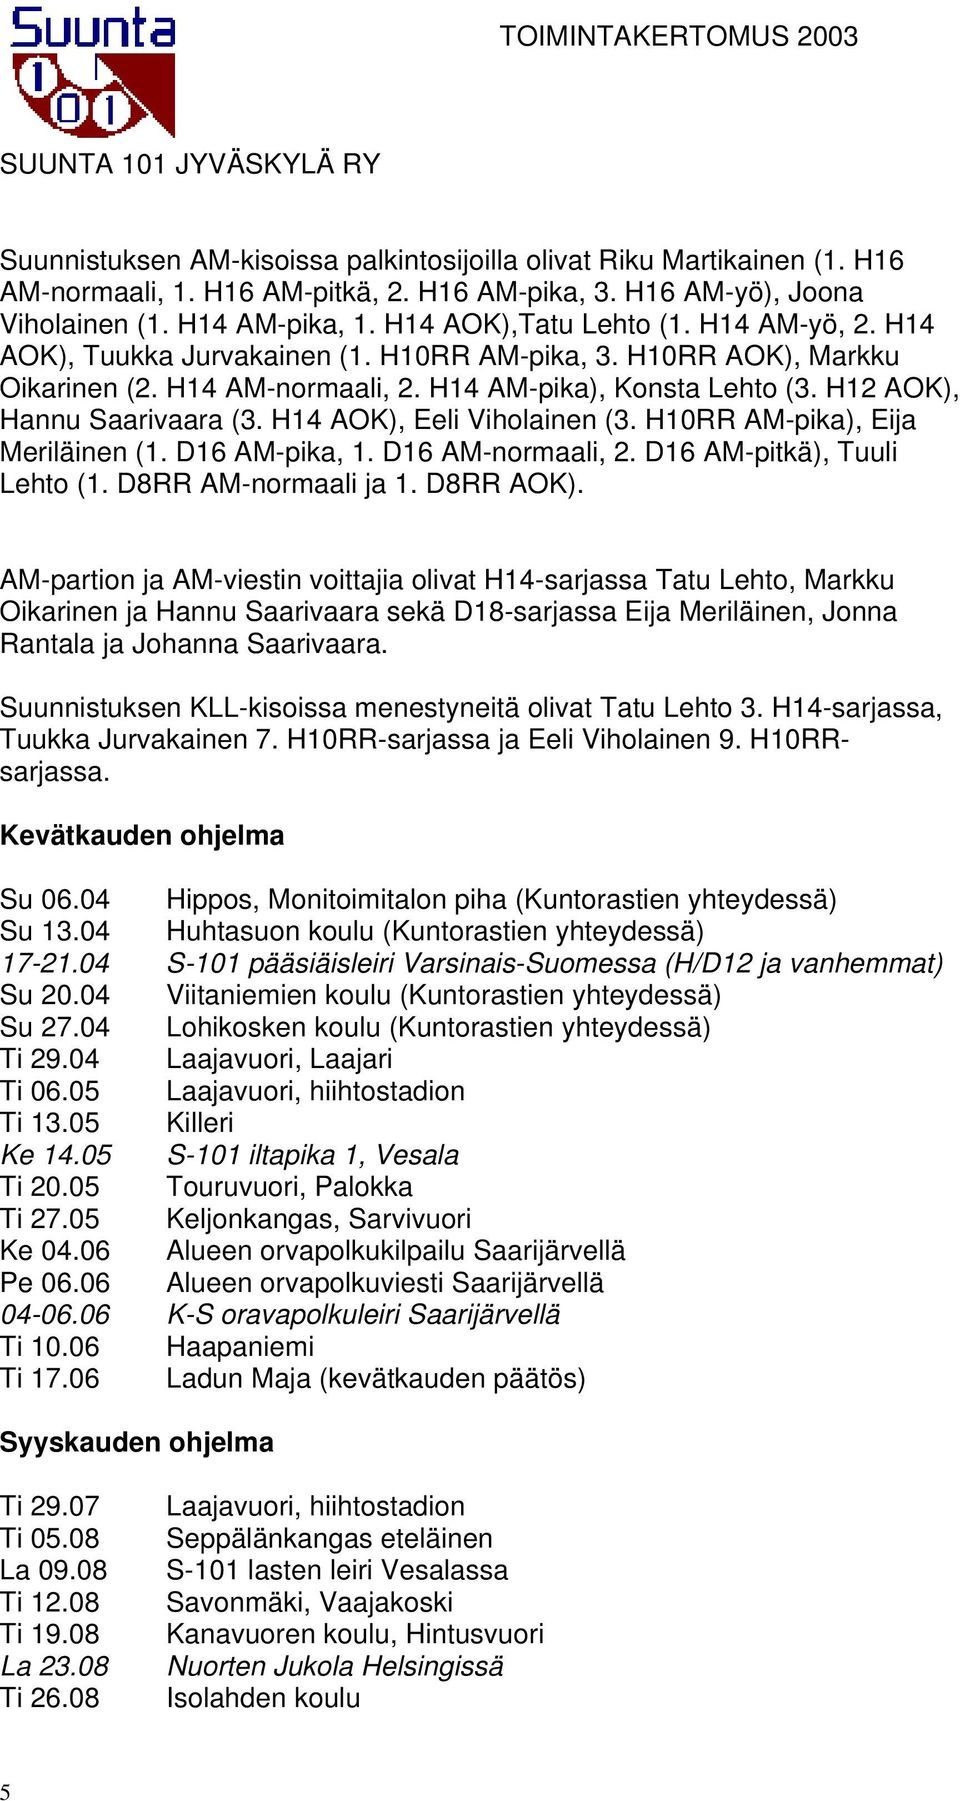 H14 AOK), Eeli Viholainen (3. H10RR AM-pika), Eija Meriläinen (1. D16 AM-pika, 1. D16 AM-normaali, 2. D16 AM-pitkä), Tuuli Lehto (1. D8RR AM-normaali ja 1. D8RR AOK).